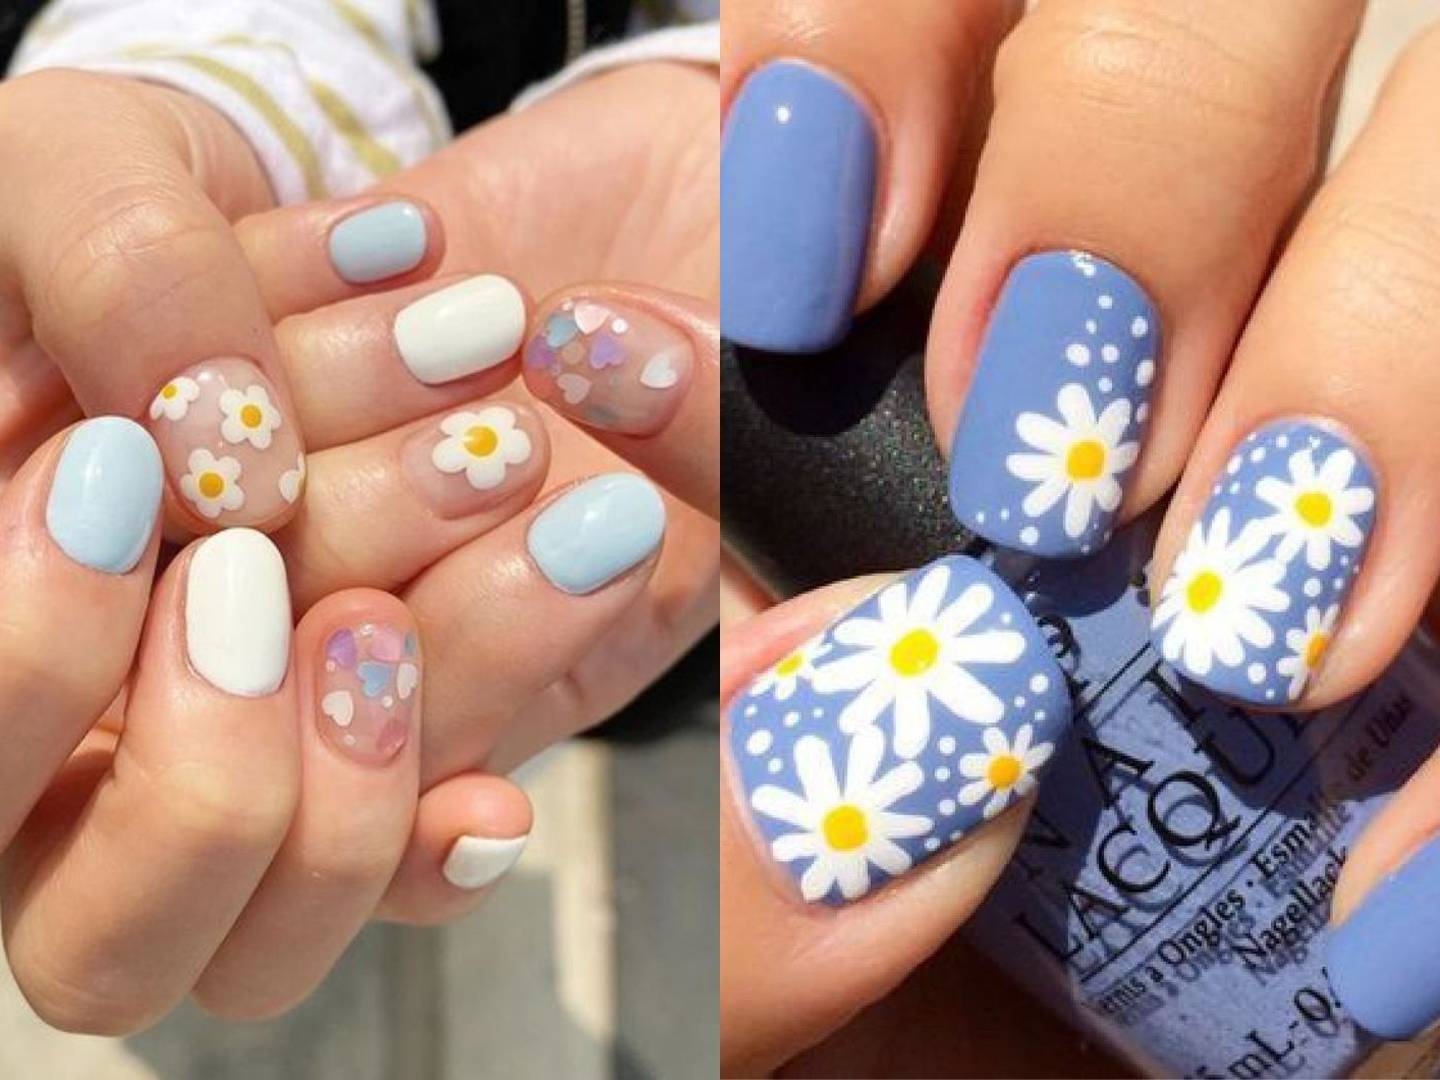 Uñas nail arts la tendencia para presumir tus uñas cortas esta primavera